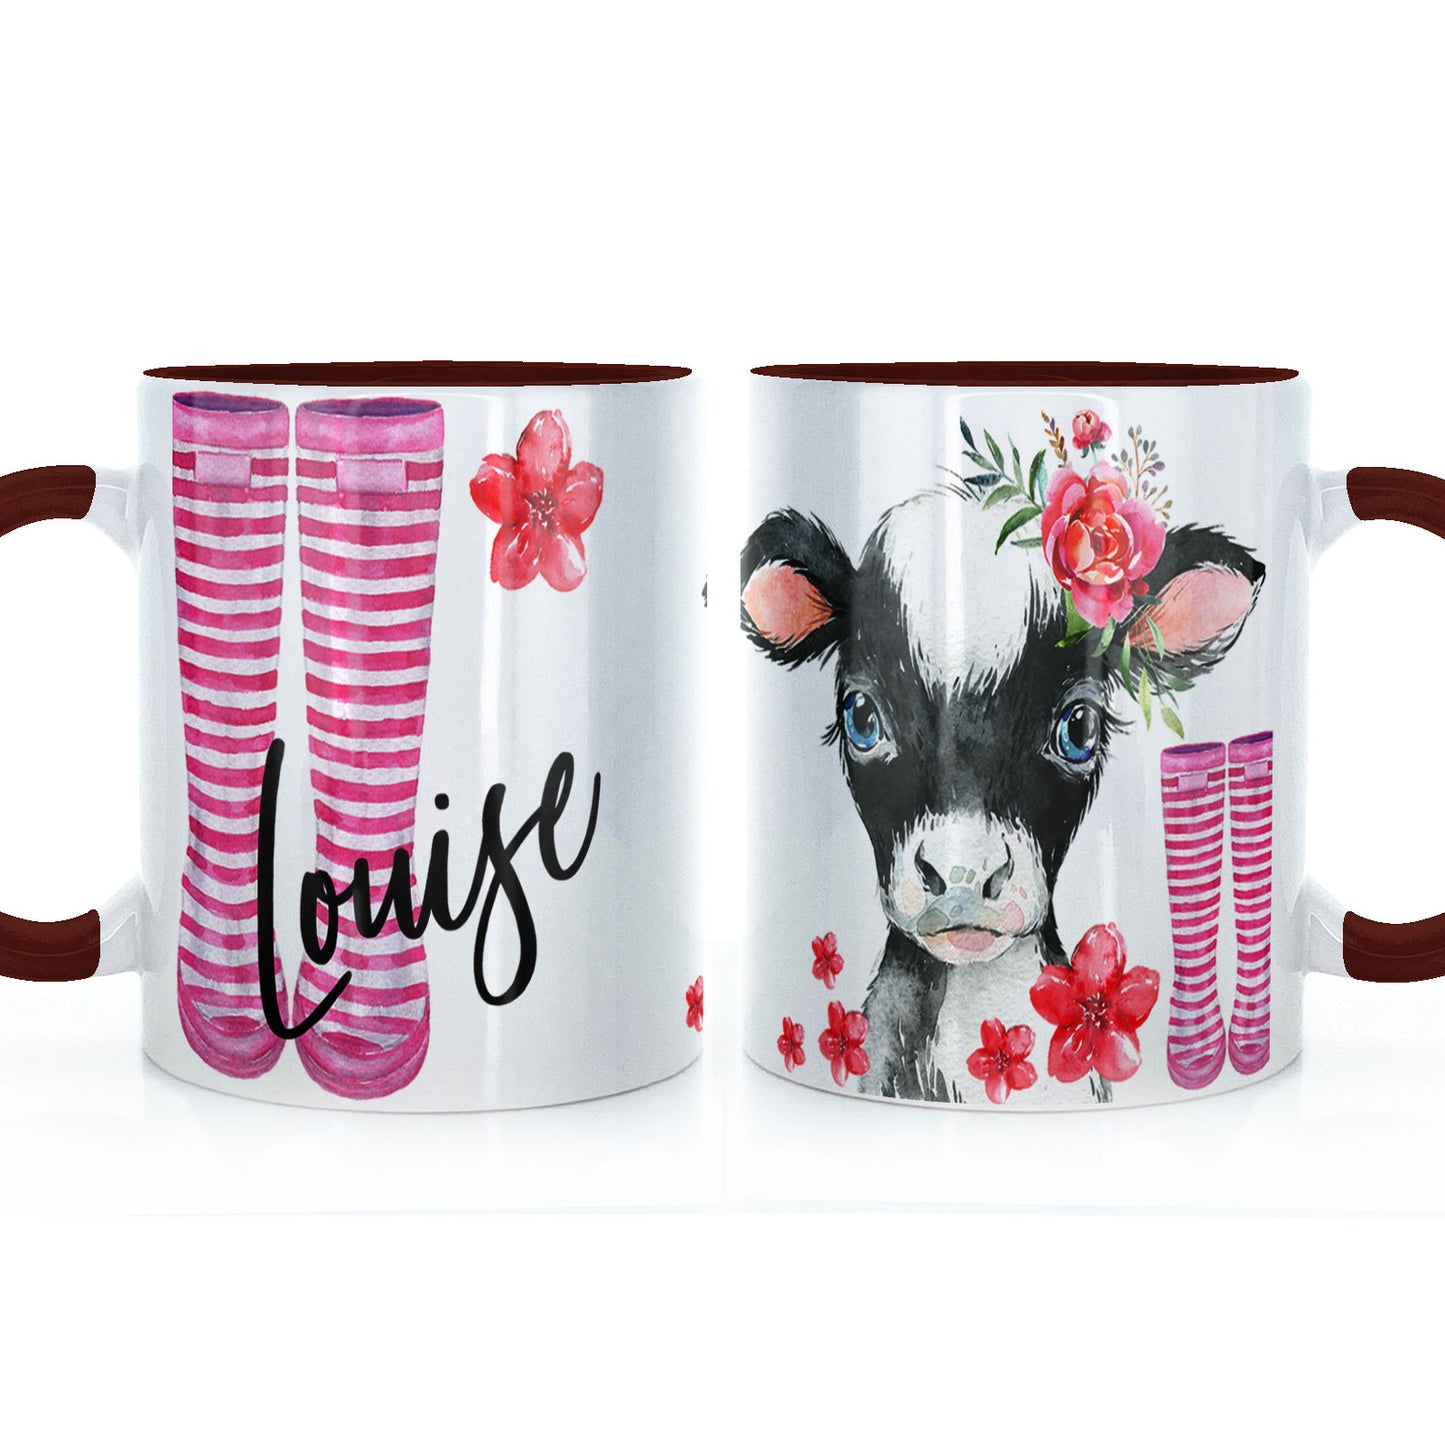 Personalisierte Tasse mit stilvollem Text und rosa Blumen- und kuhrosa gestreiften Gummistiefeln